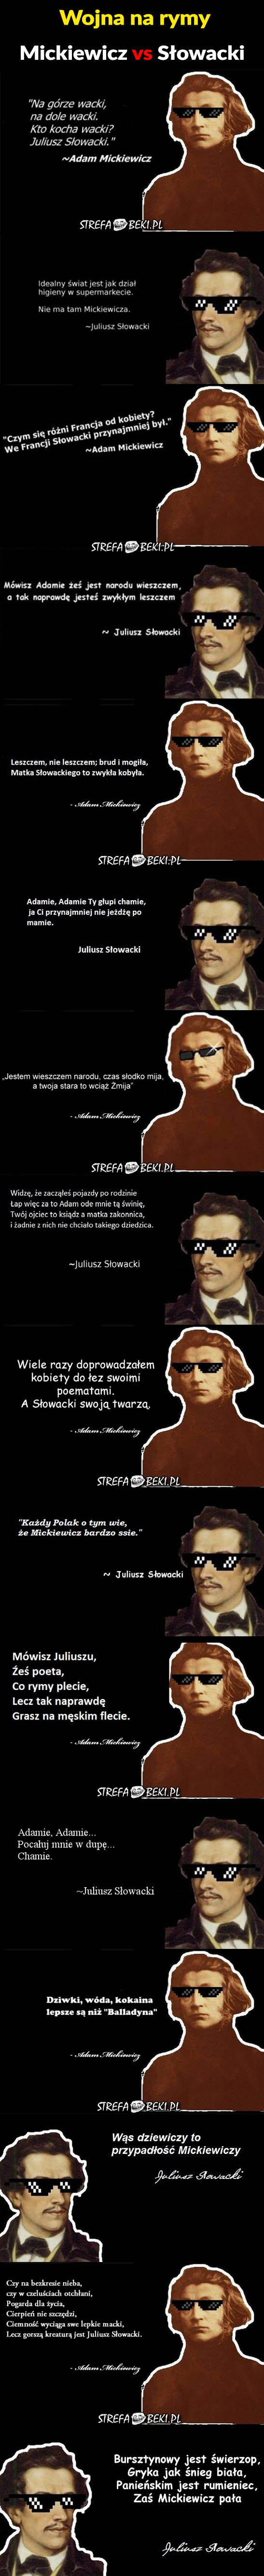 Mickiewicz vs Słowacki